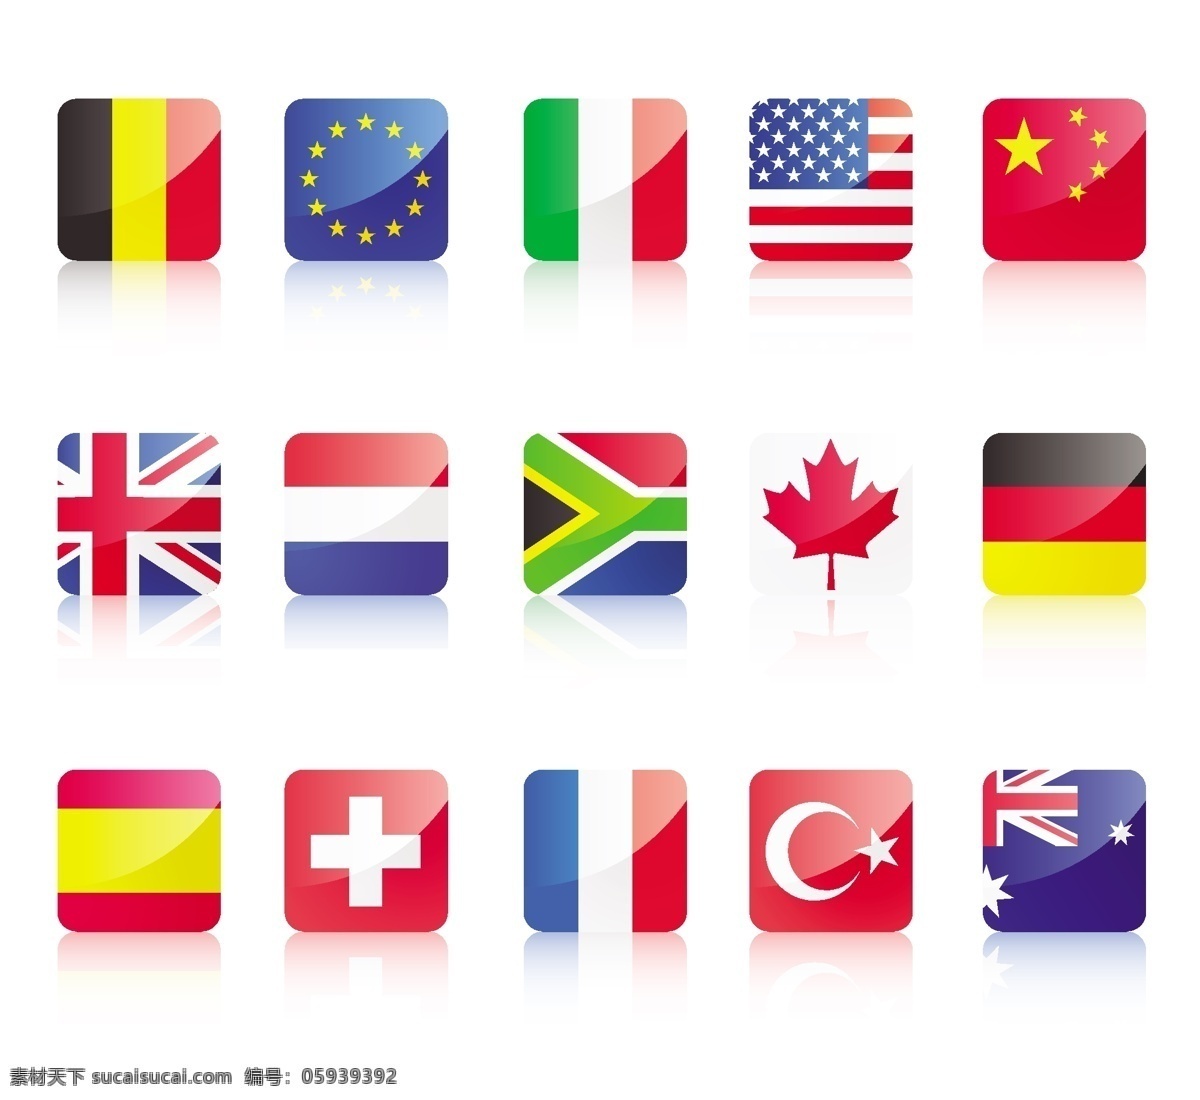 水晶 国旗 矢量图 法国 美国 矢量图标 图标 中国 矢量 其他矢量图